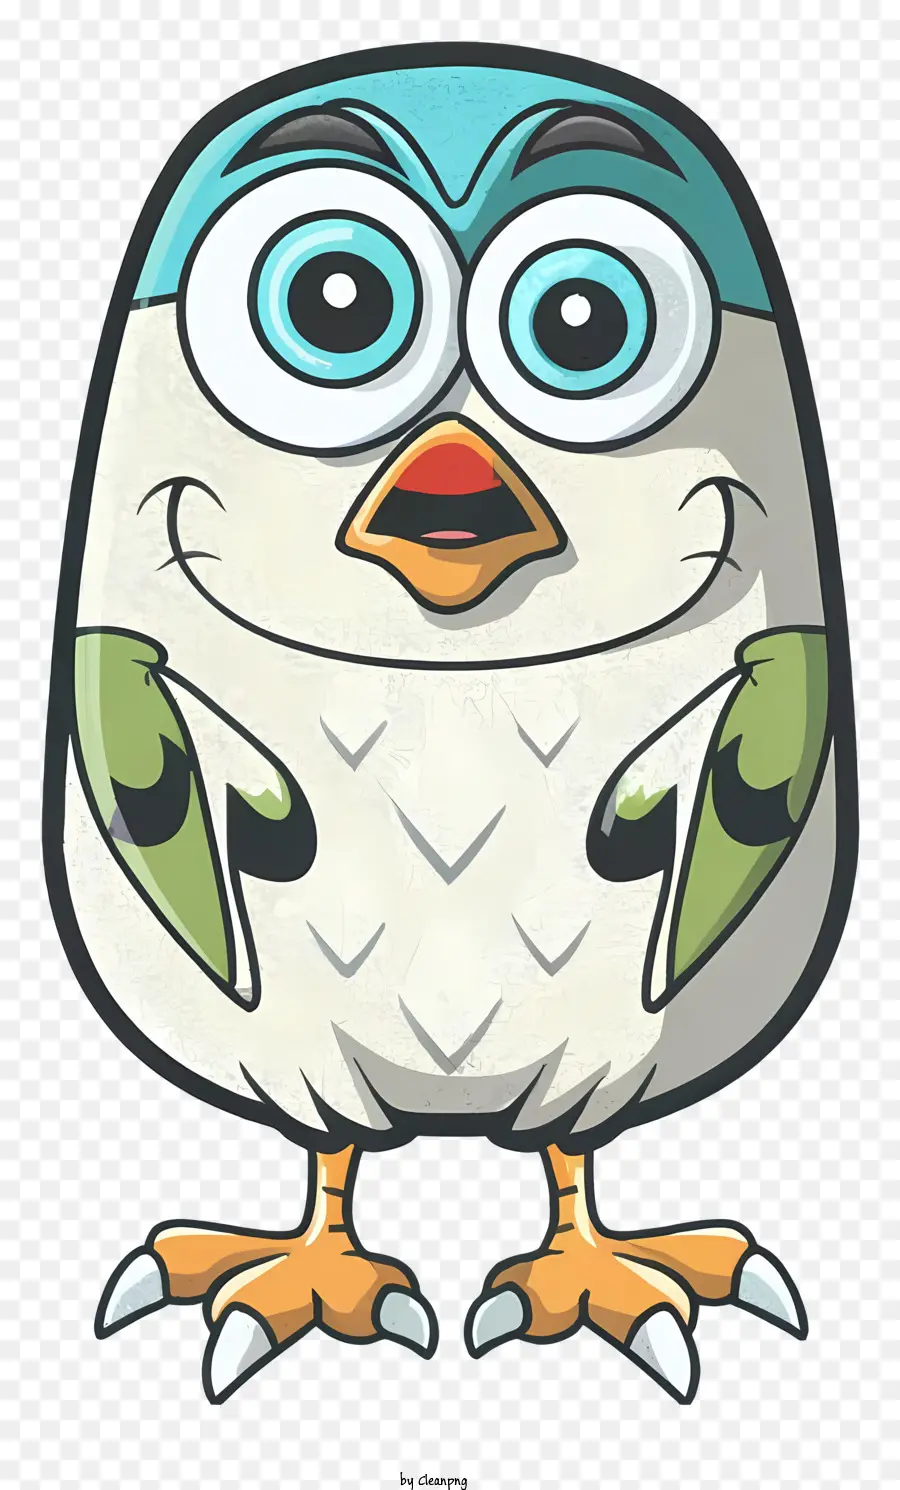 phim hoạt hình con chim - Chim hoạt hình với đôi mắt to và mỉm cười